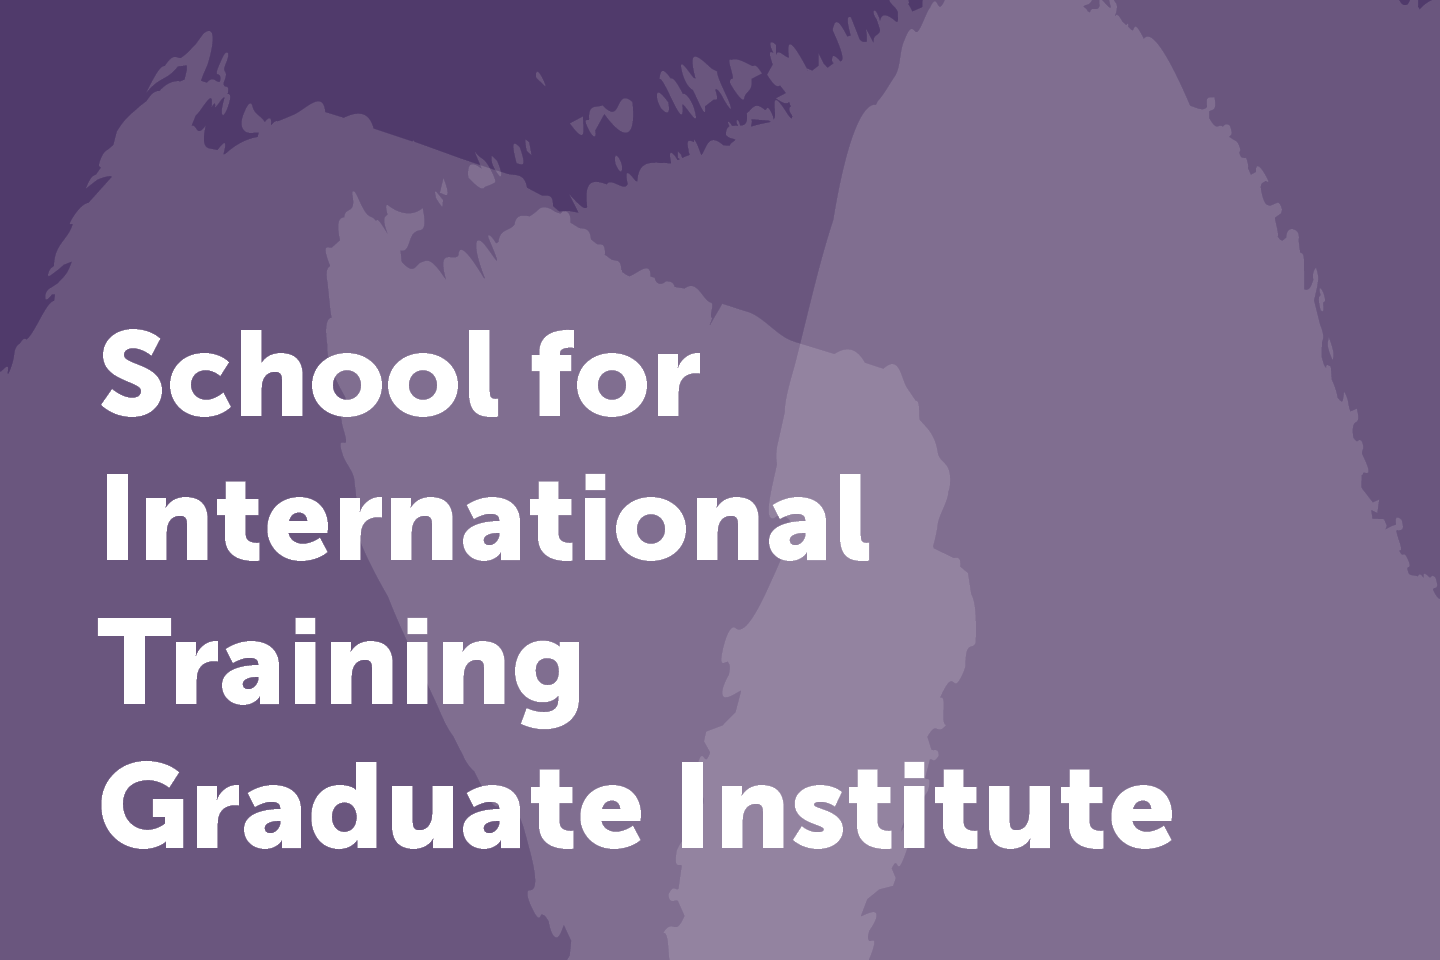 School for International Training Graduate Institute